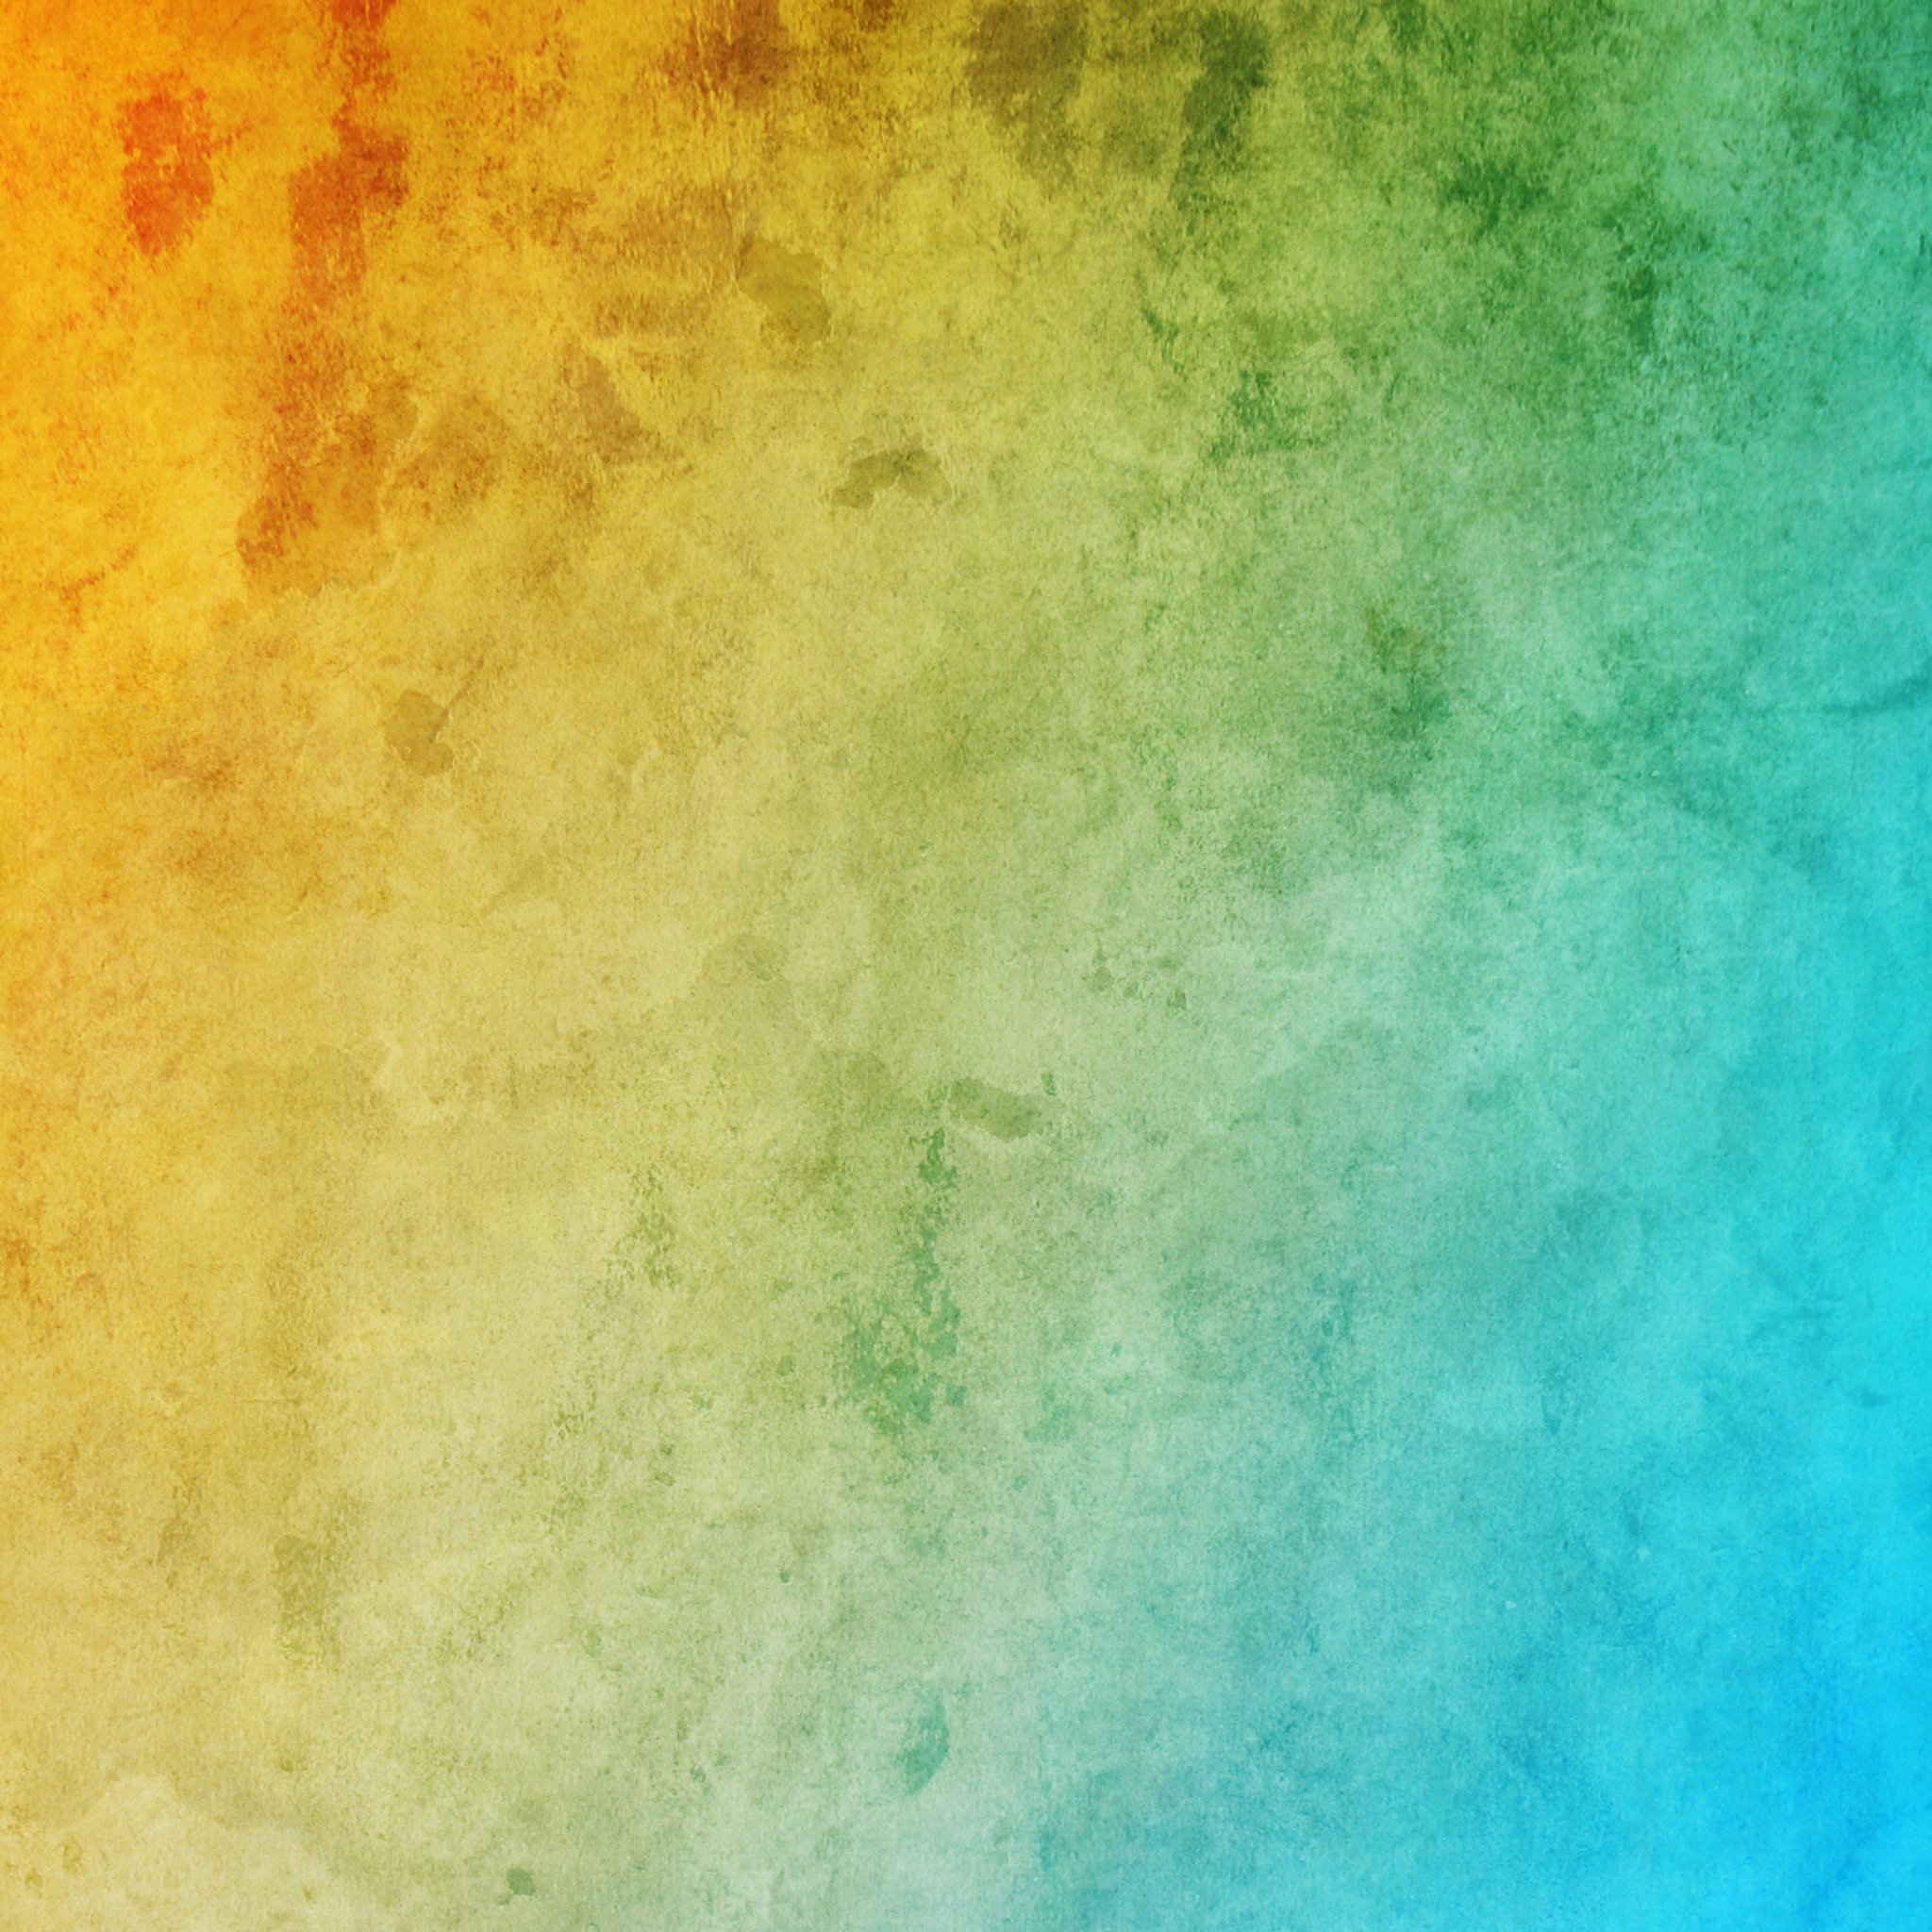 sfondo di ipad pro 9.7,verde,blu,turchese,giallo,acqua